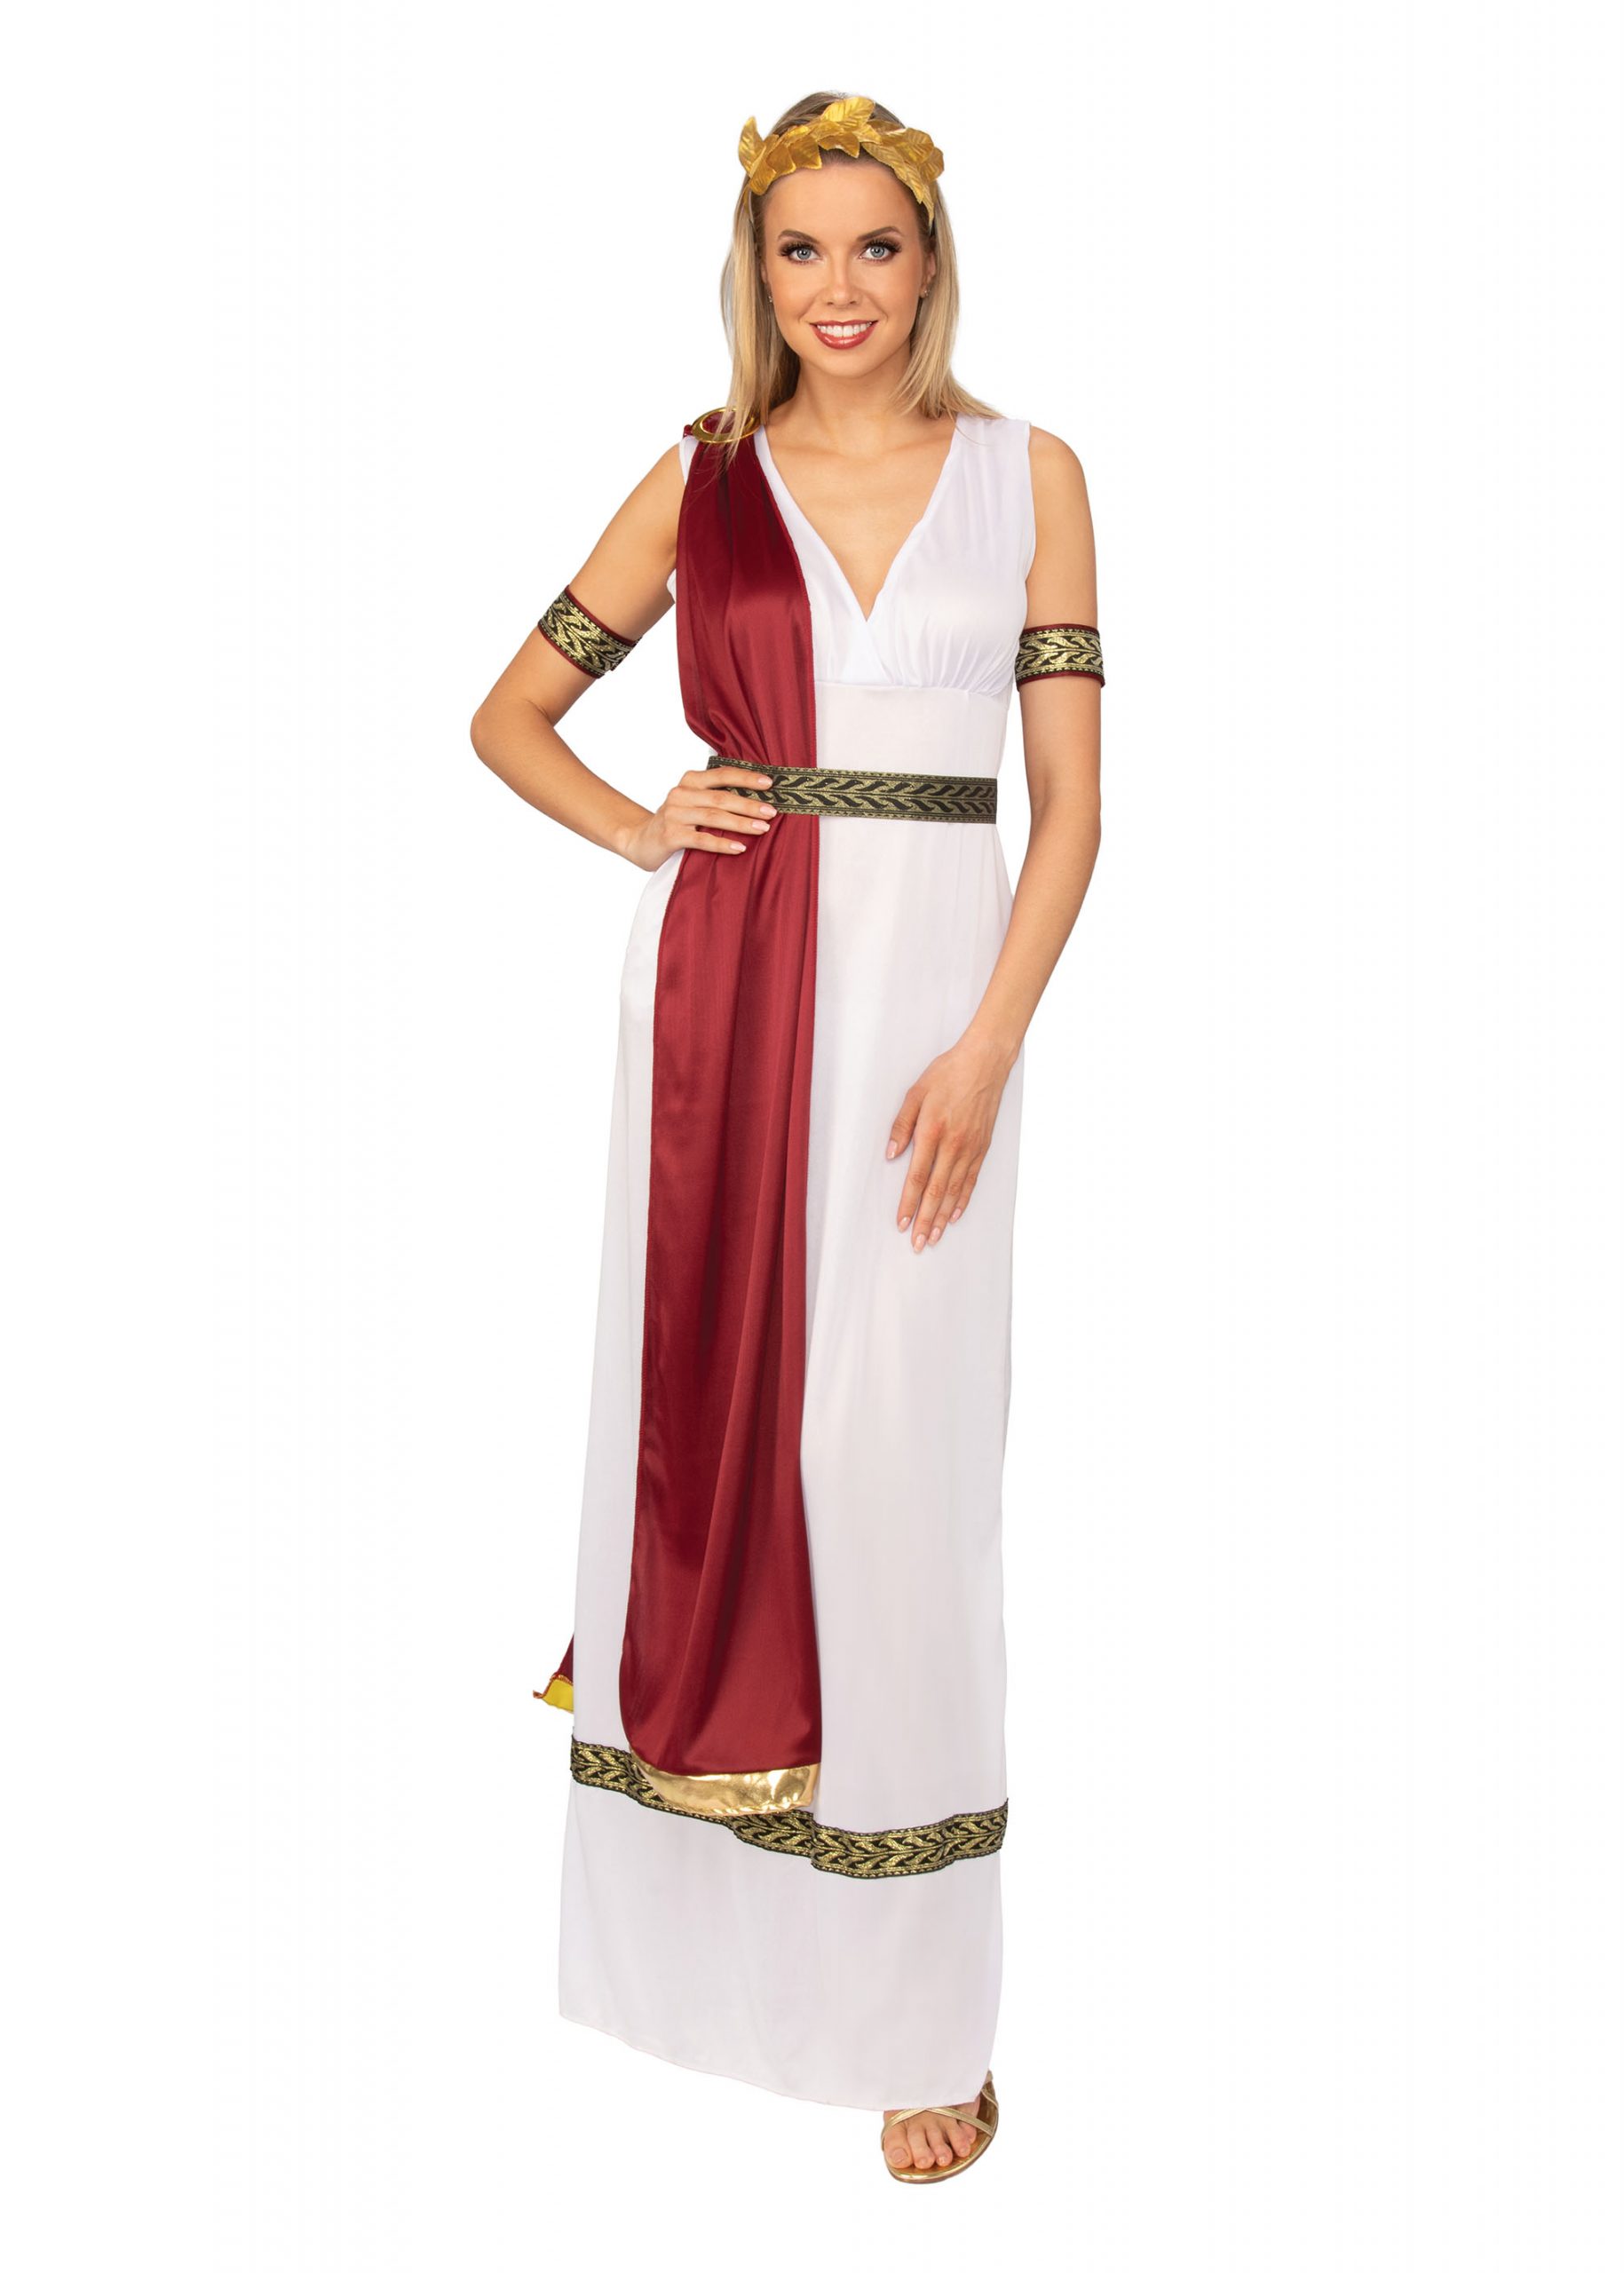 gods and goddesses of greek mythology costumes